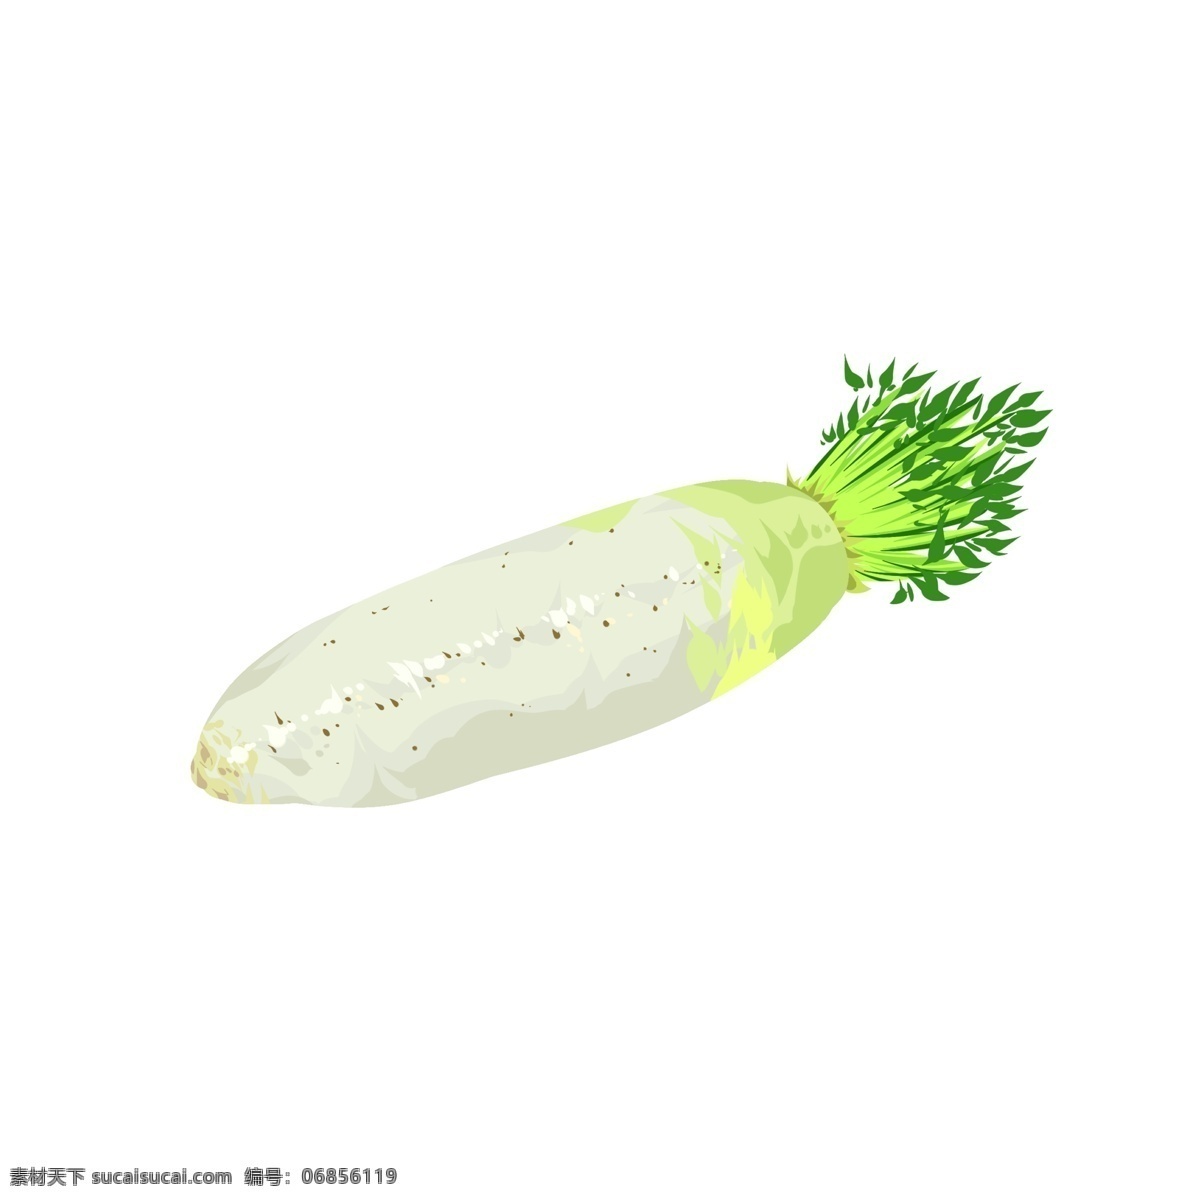 白萝卜 免 抠 白色 蔬菜 健康 美食 简洁 植物